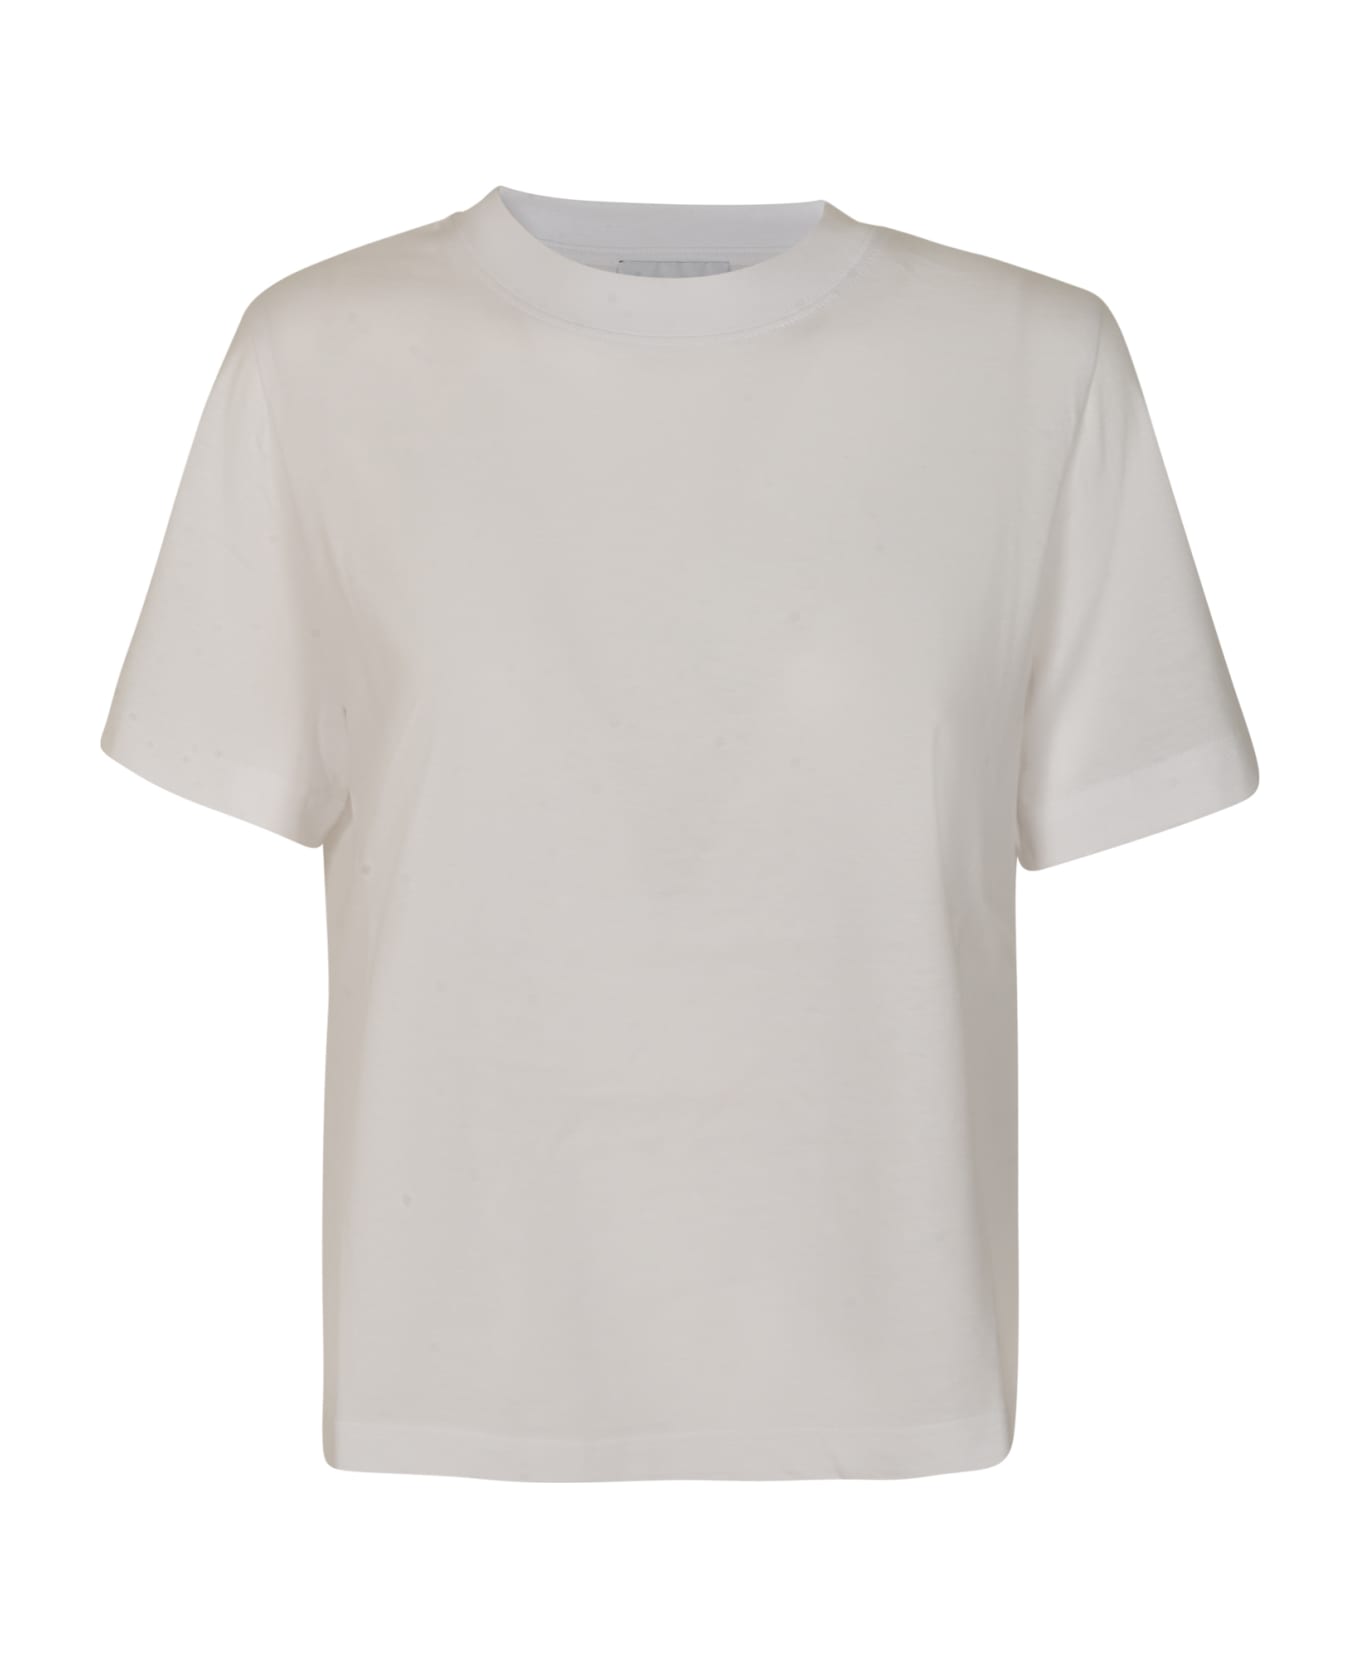 VIS A VIS Round Neck T-shirt - White Tシャツ